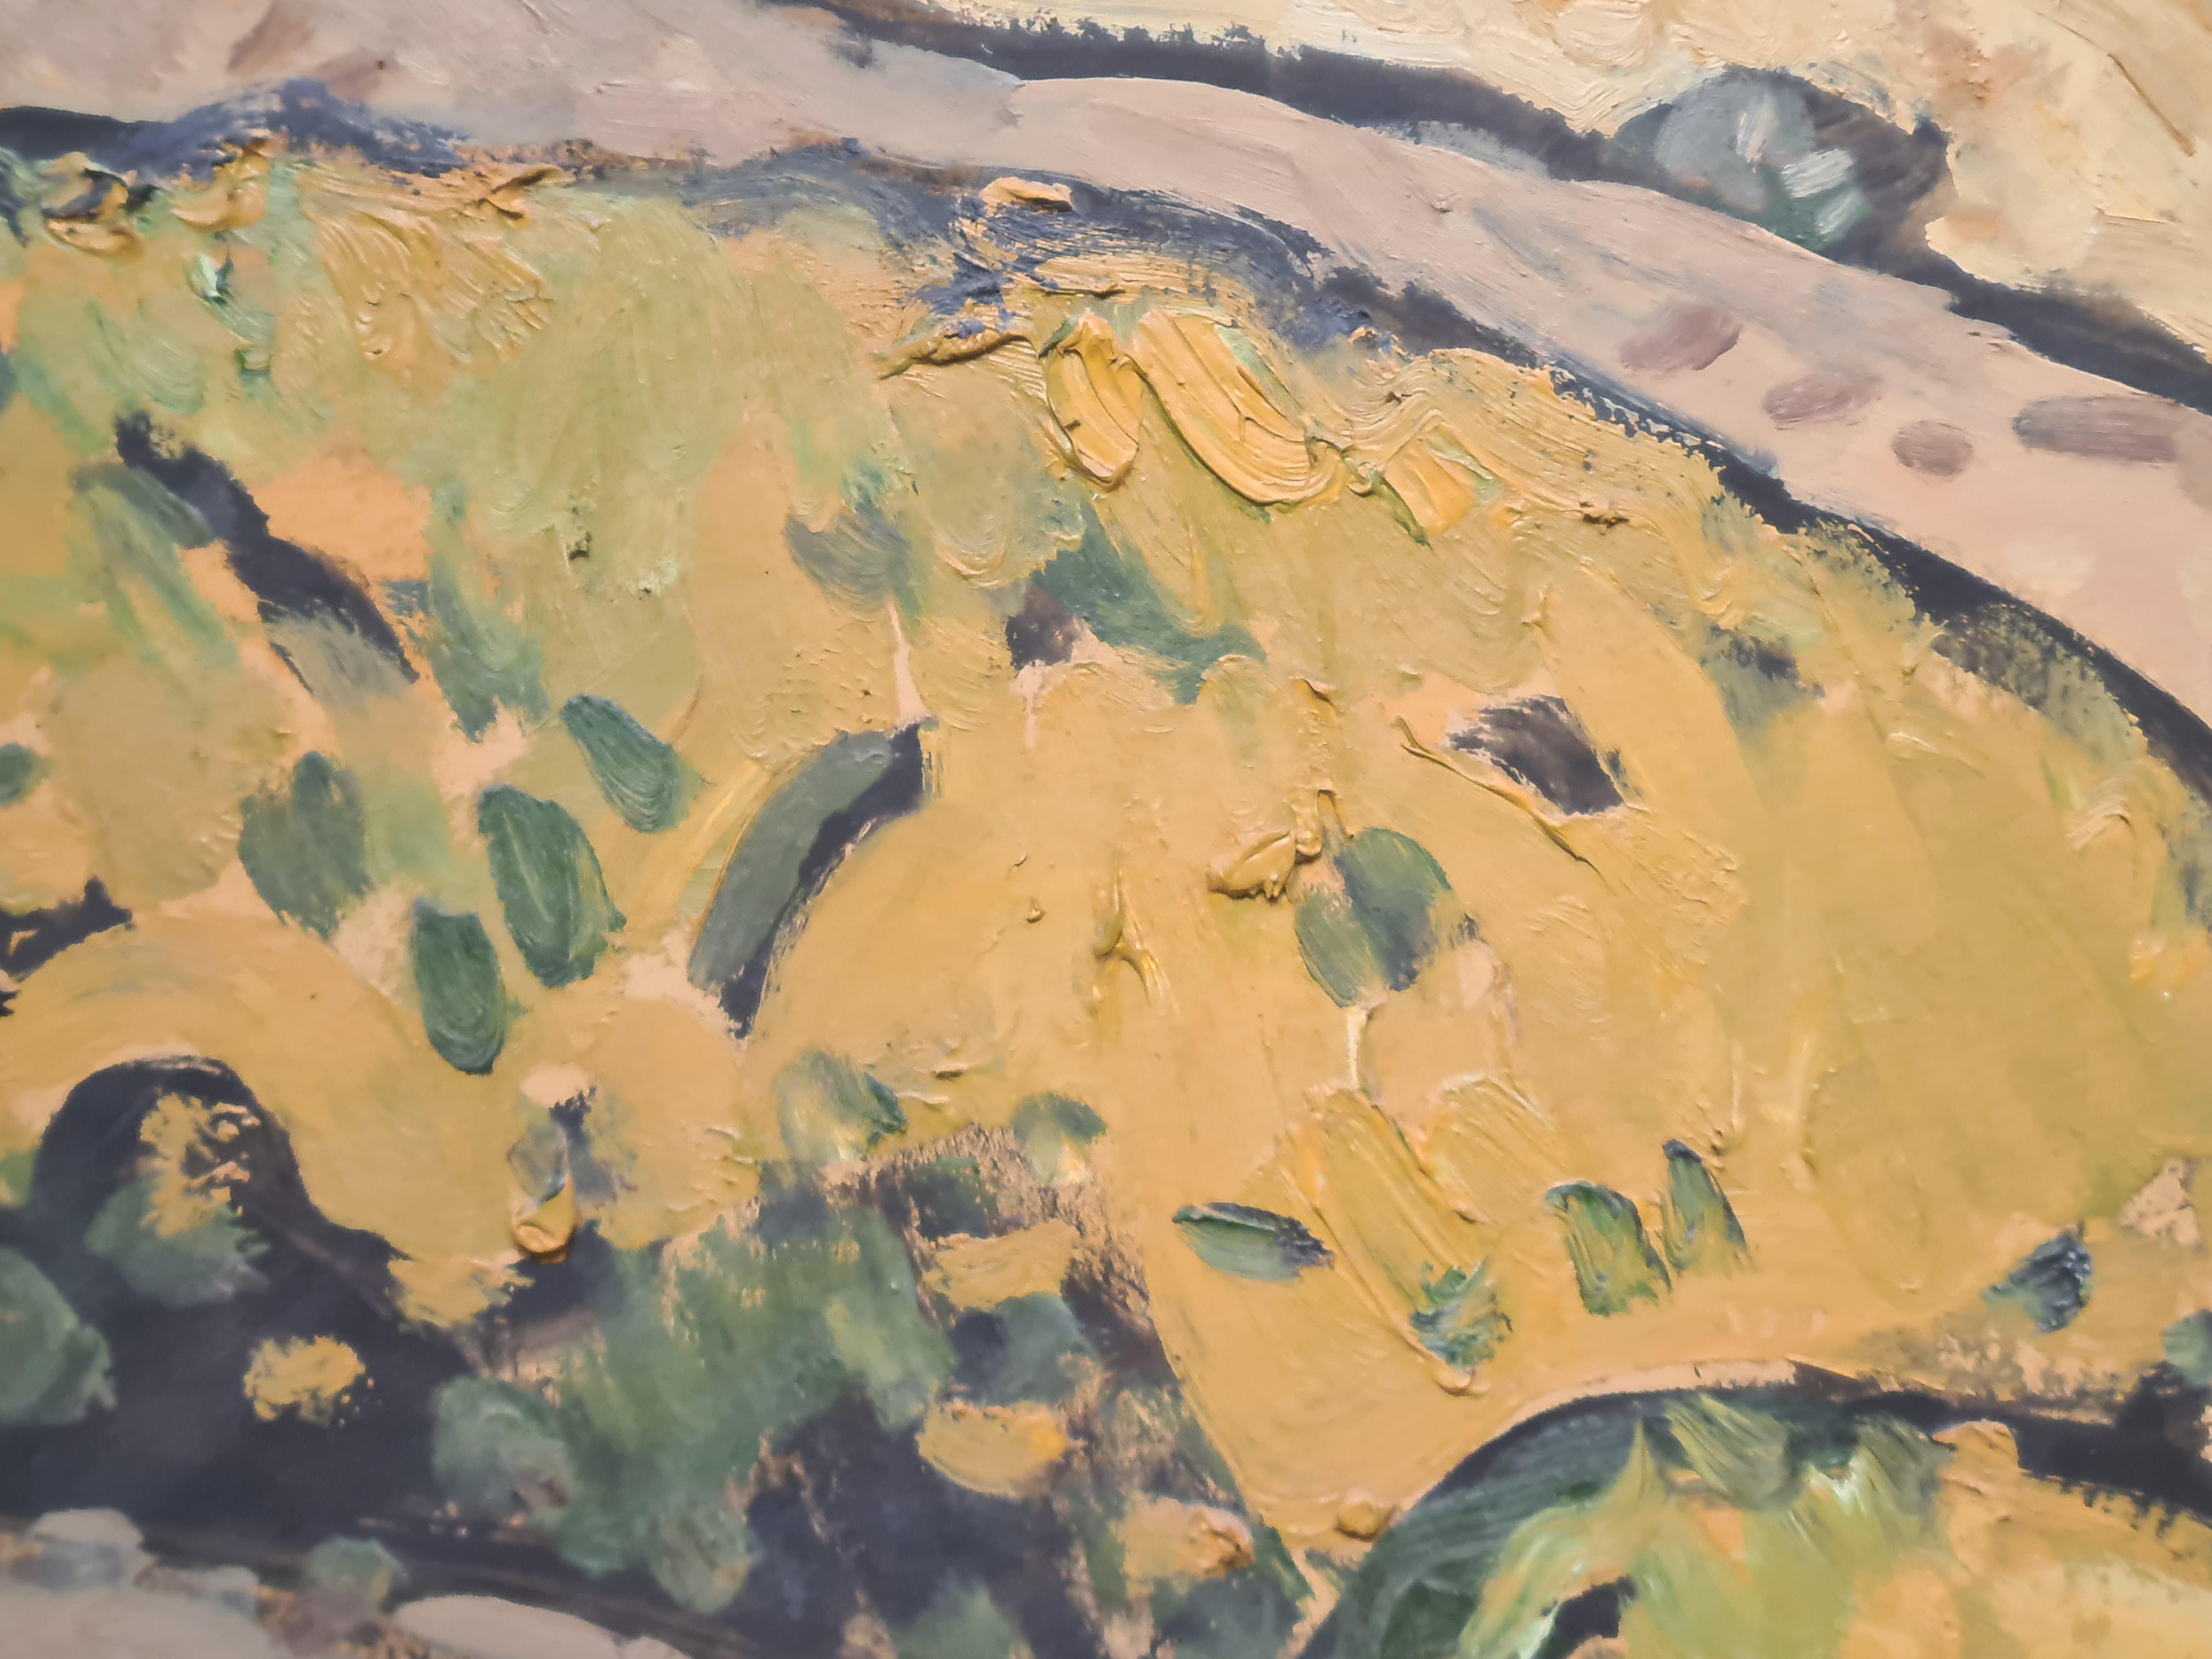 Paysage provençal expressionniste français, huile sur panneau, par l'artiste français Jean Arène (1929 - 2020), représentant un paysage provençal, du sud de la France. Le tableau est signé en bas à gauche et signé, daté et titré au dos du tableau.